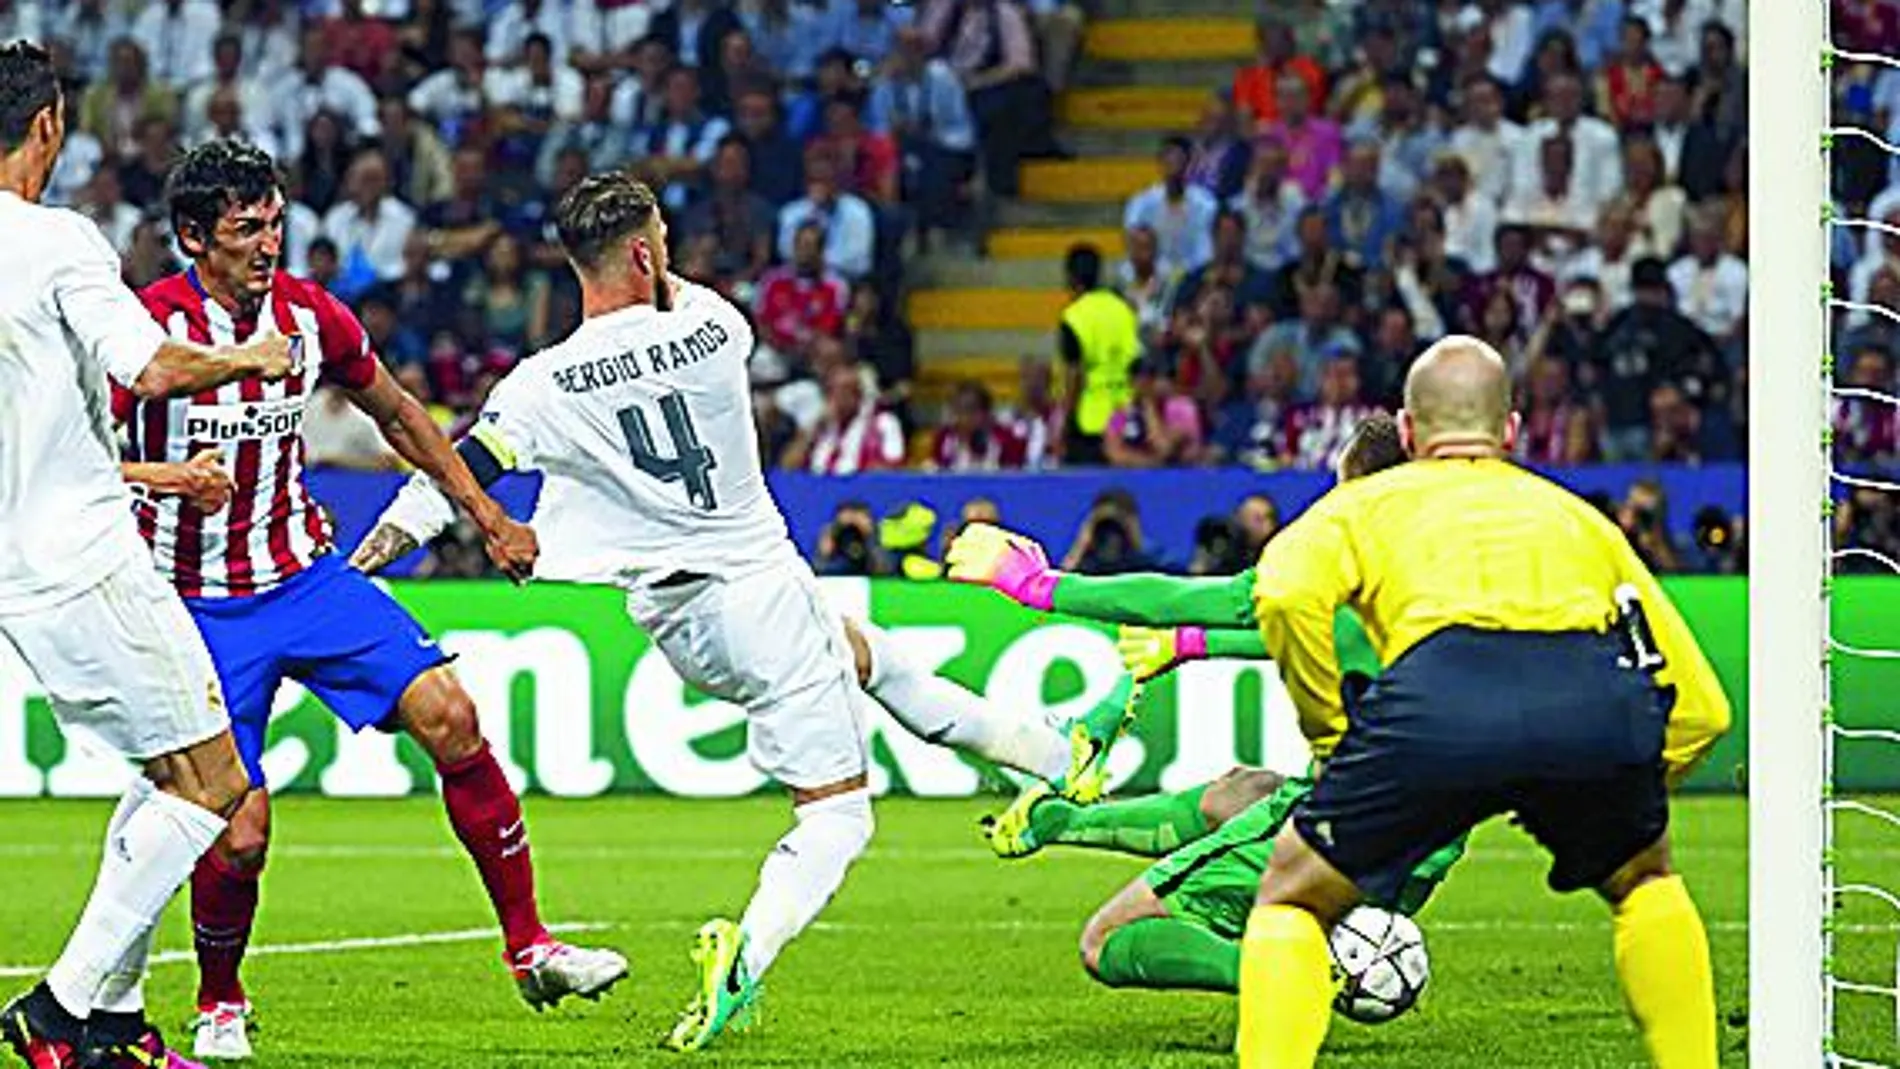 A los quince minutos marcó el Madrid, pero el tanto no debió subir al marcador. Prolonga Bale un balón y el defensa central blanco está más adelantado que la defensa